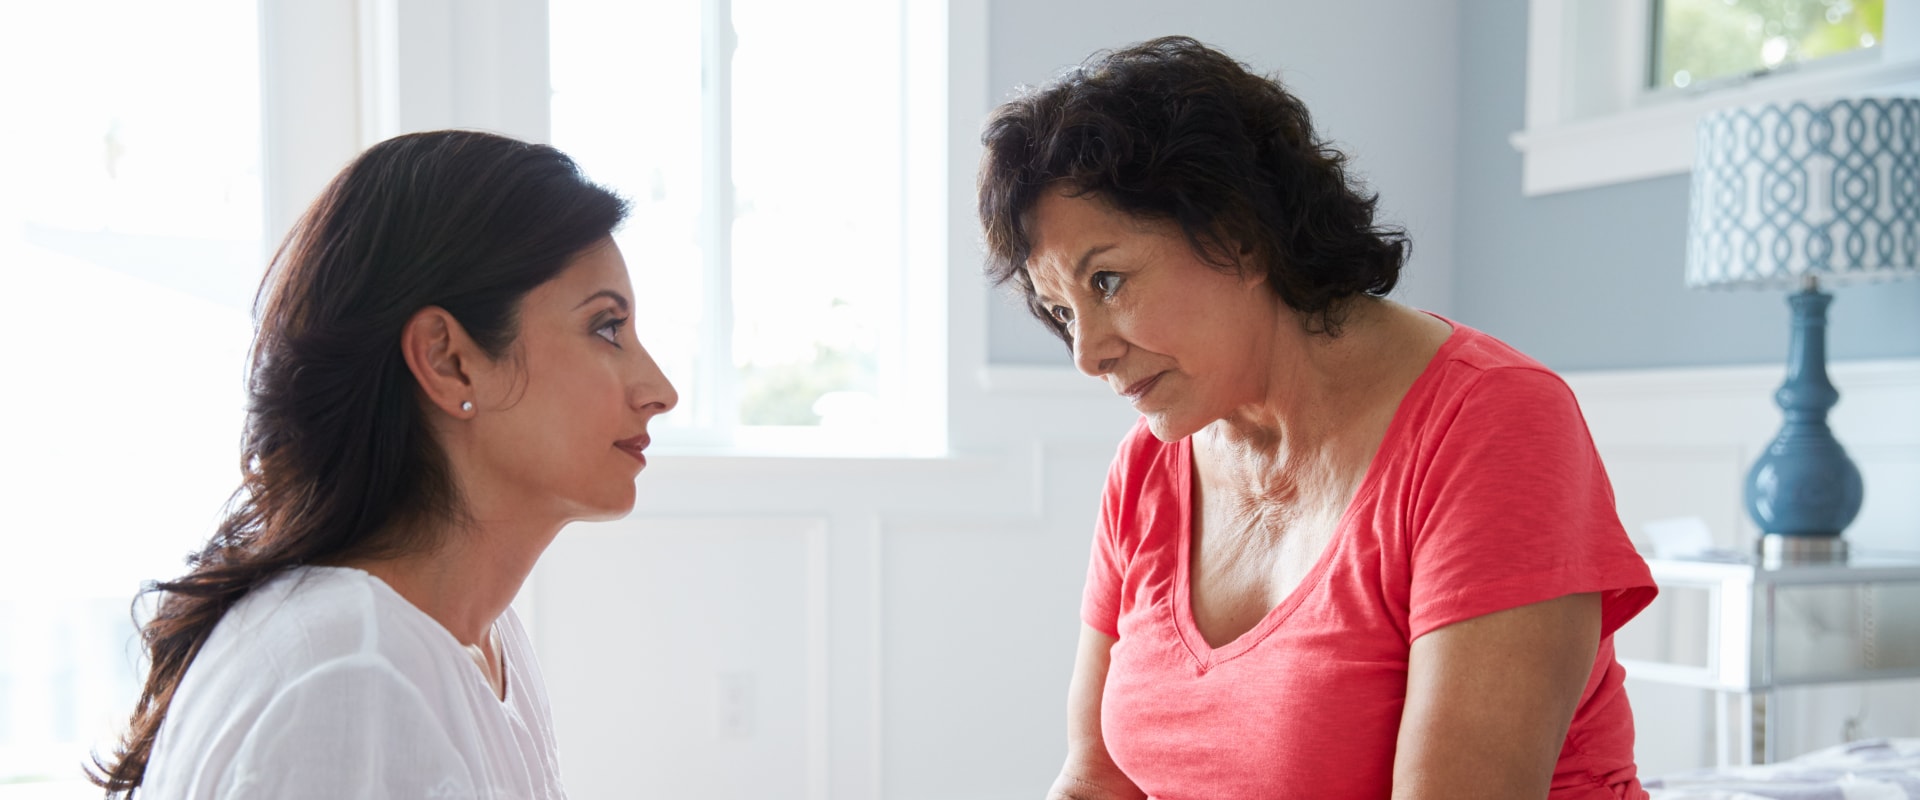 How do you handle stress as a caregiver?